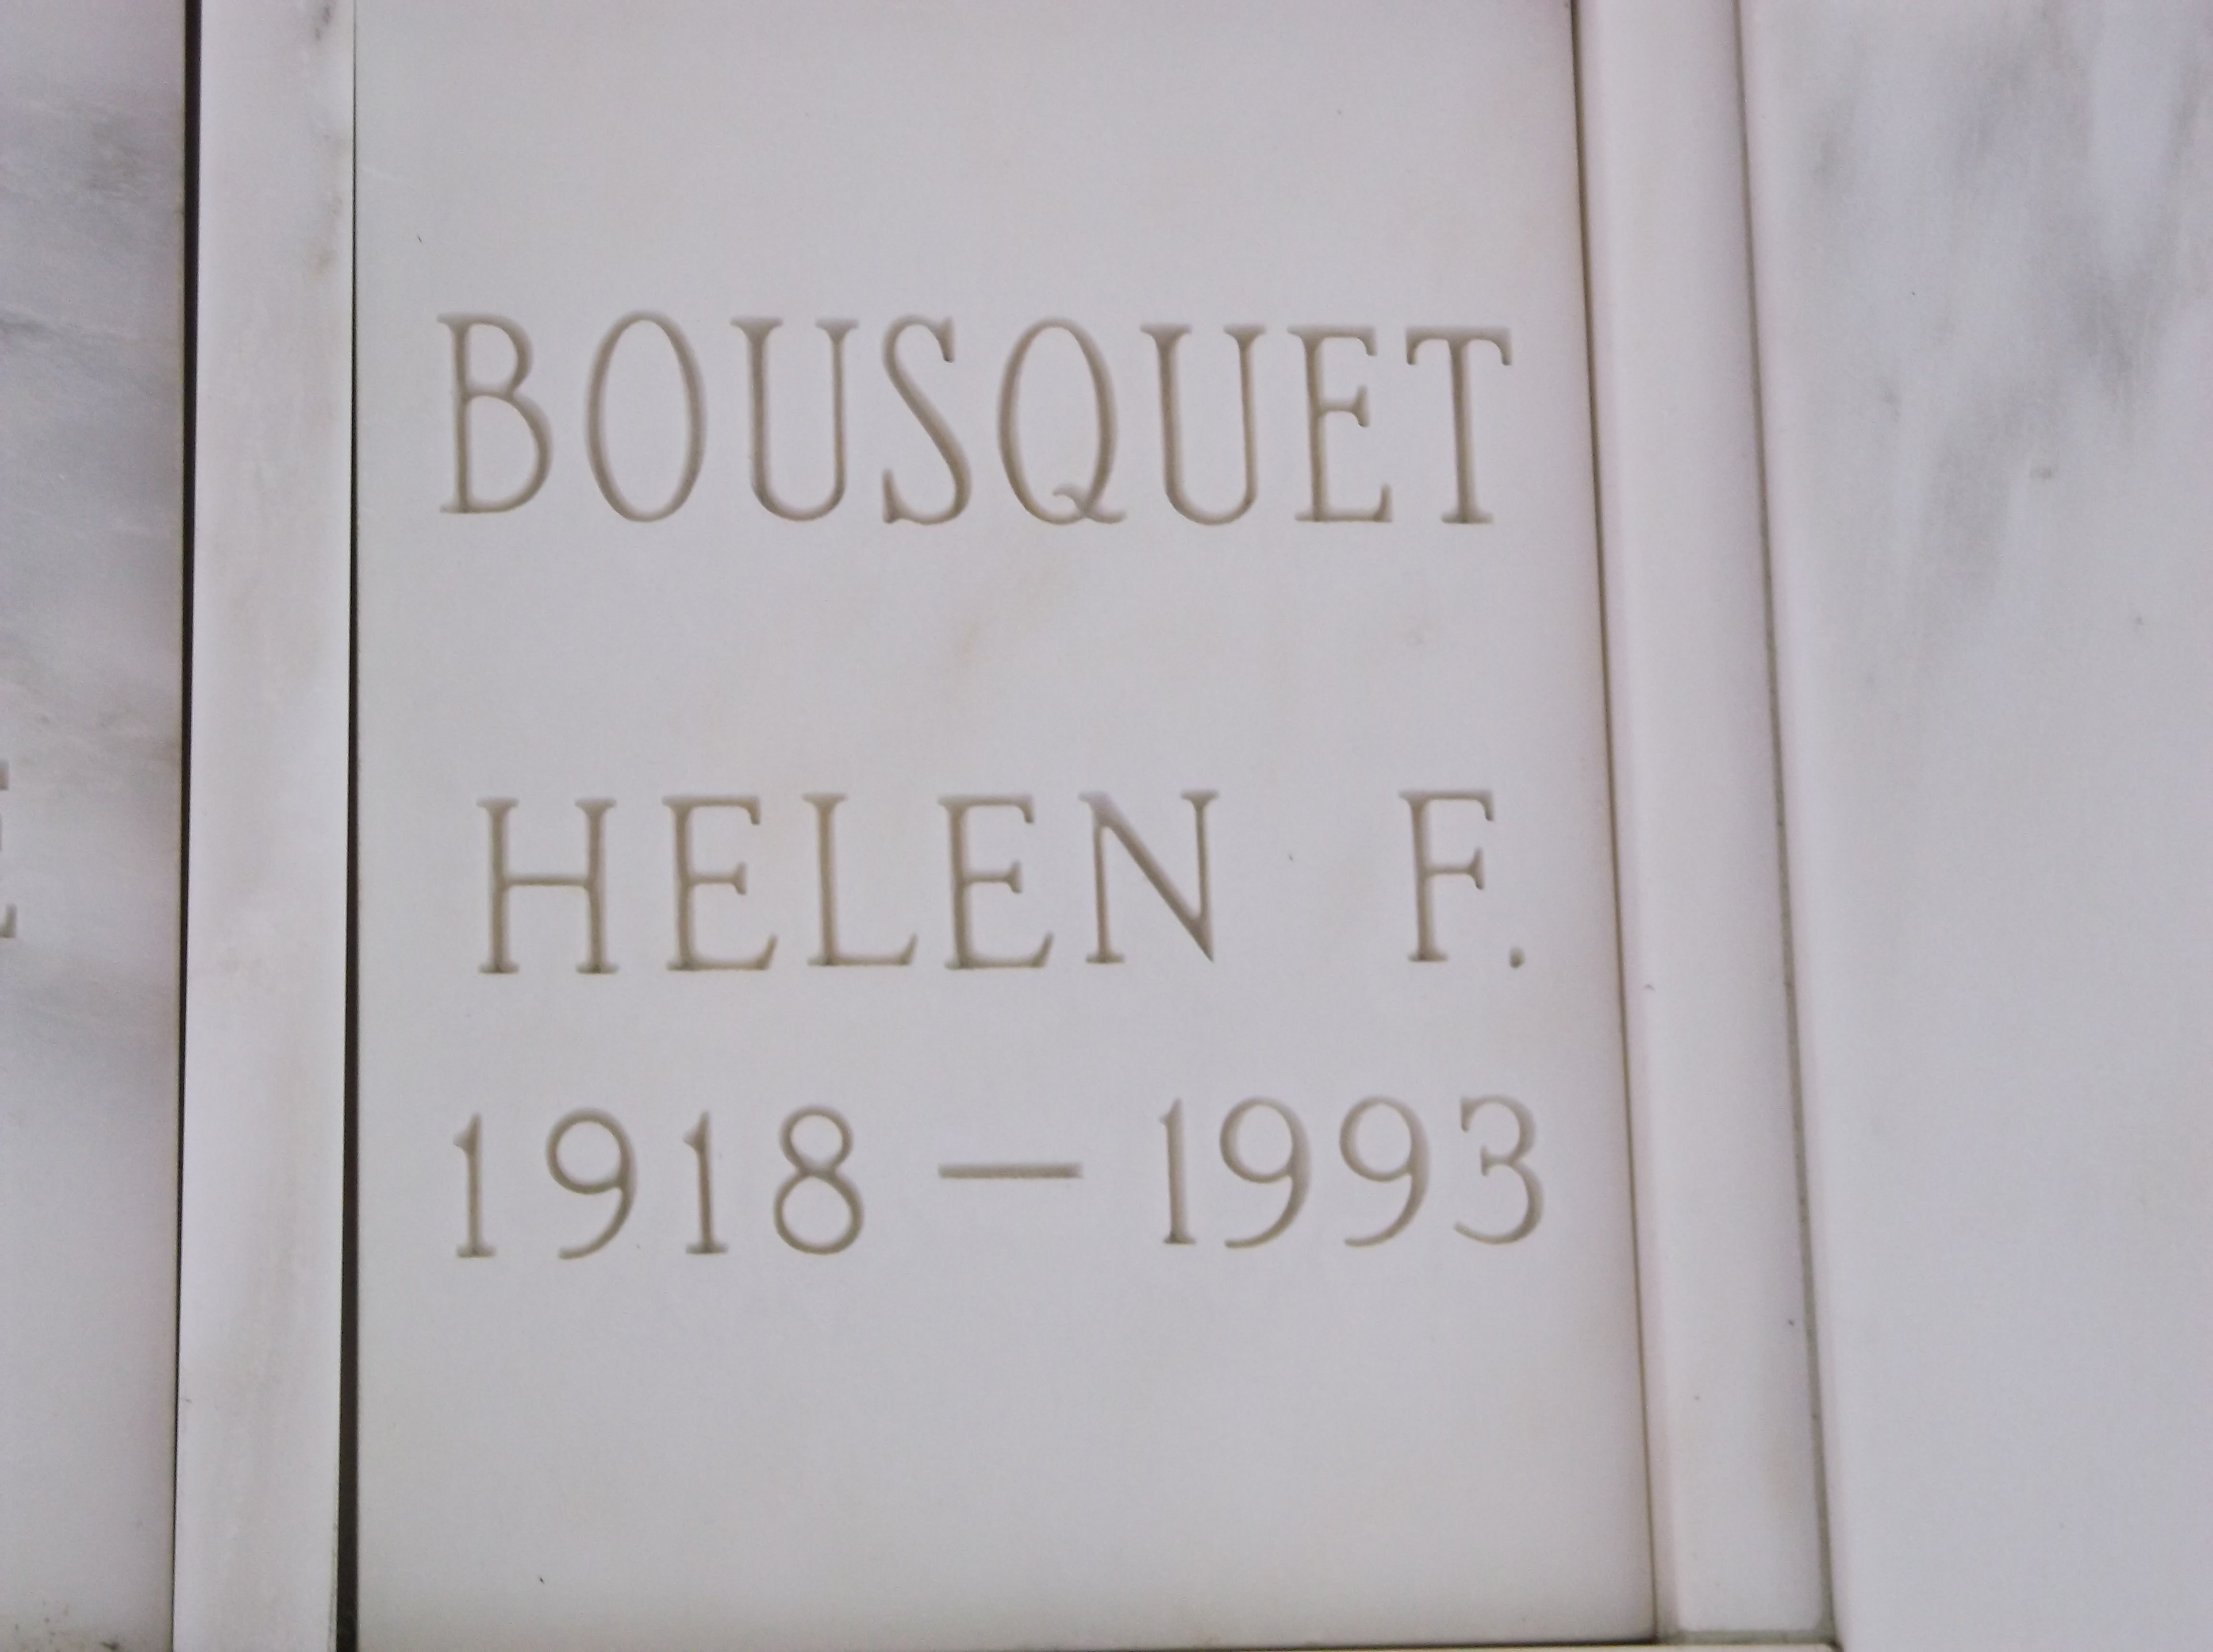 Helen F Bousquet